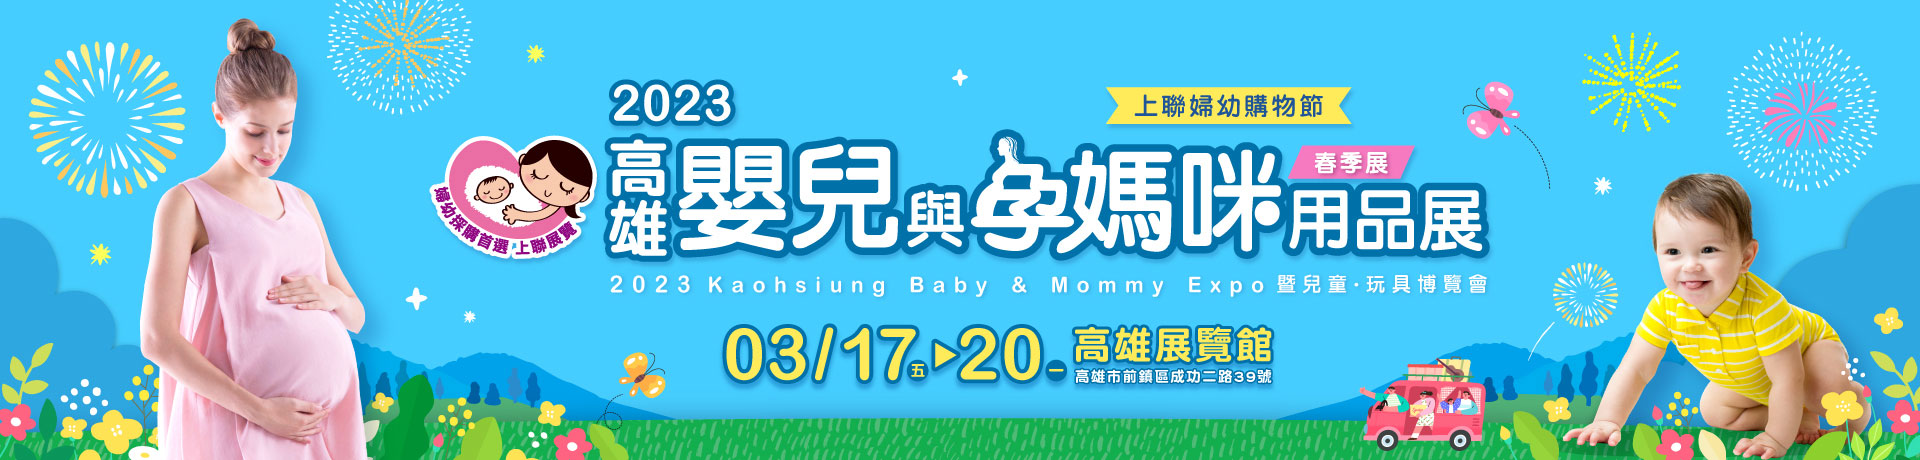 2023高雄嬰兒與孕媽咪用品展(春季展)